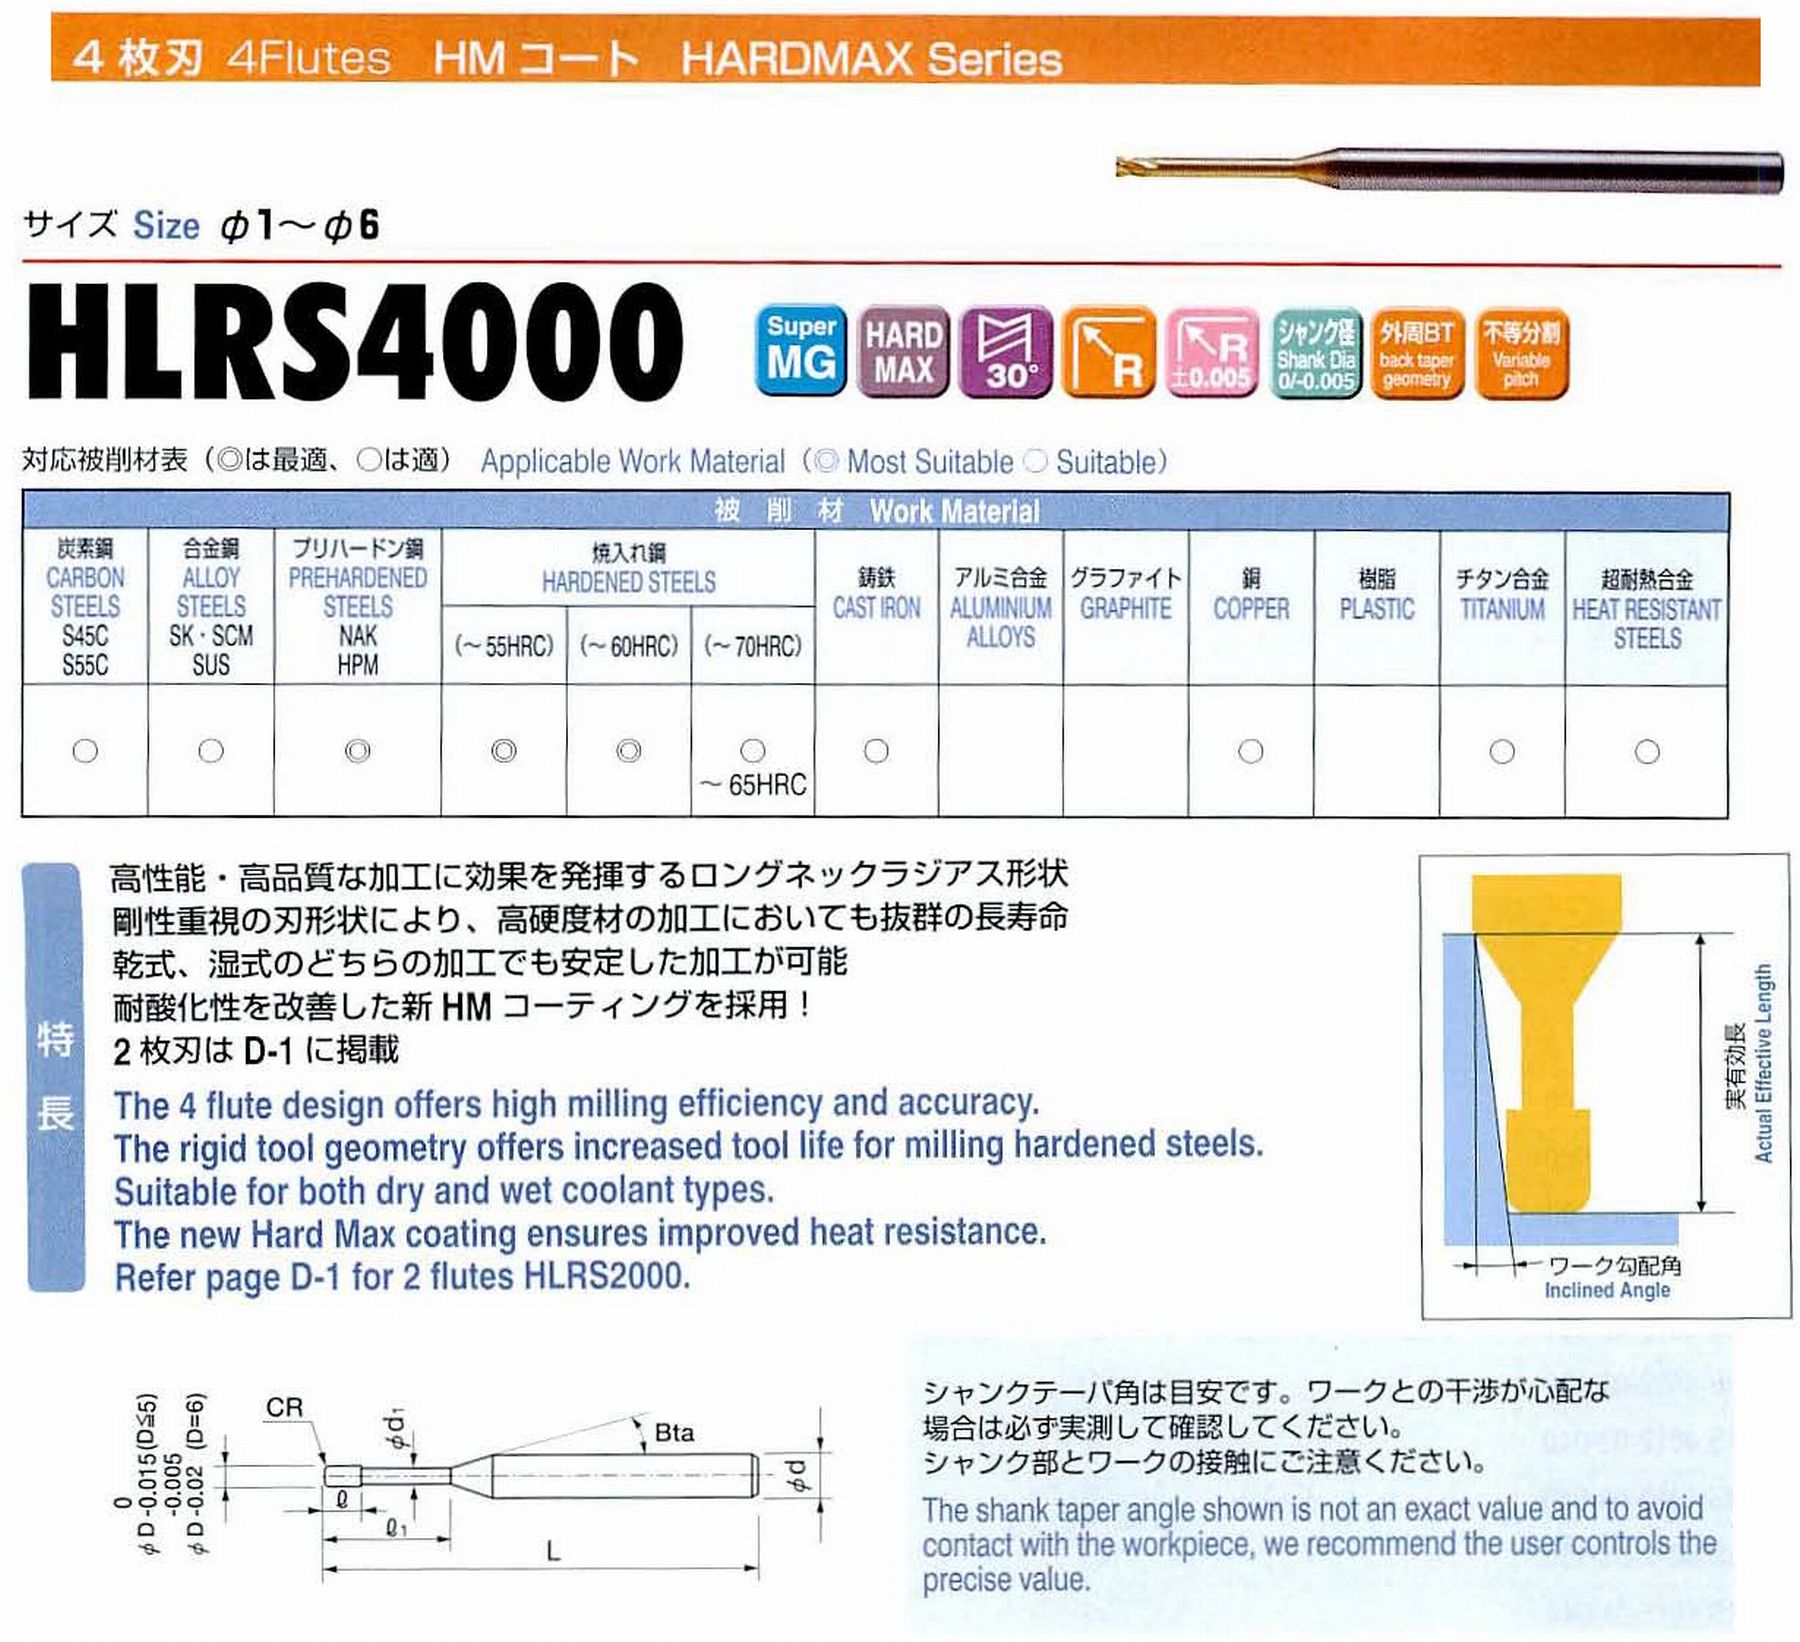 ユニオンツール 4枚刃 HLRS4025-01-160 外径2.5 コーナ半径R0.1 有効長16 刃長2 首径2.42 シャンクテーパ角16° 全長60 シャンク径4